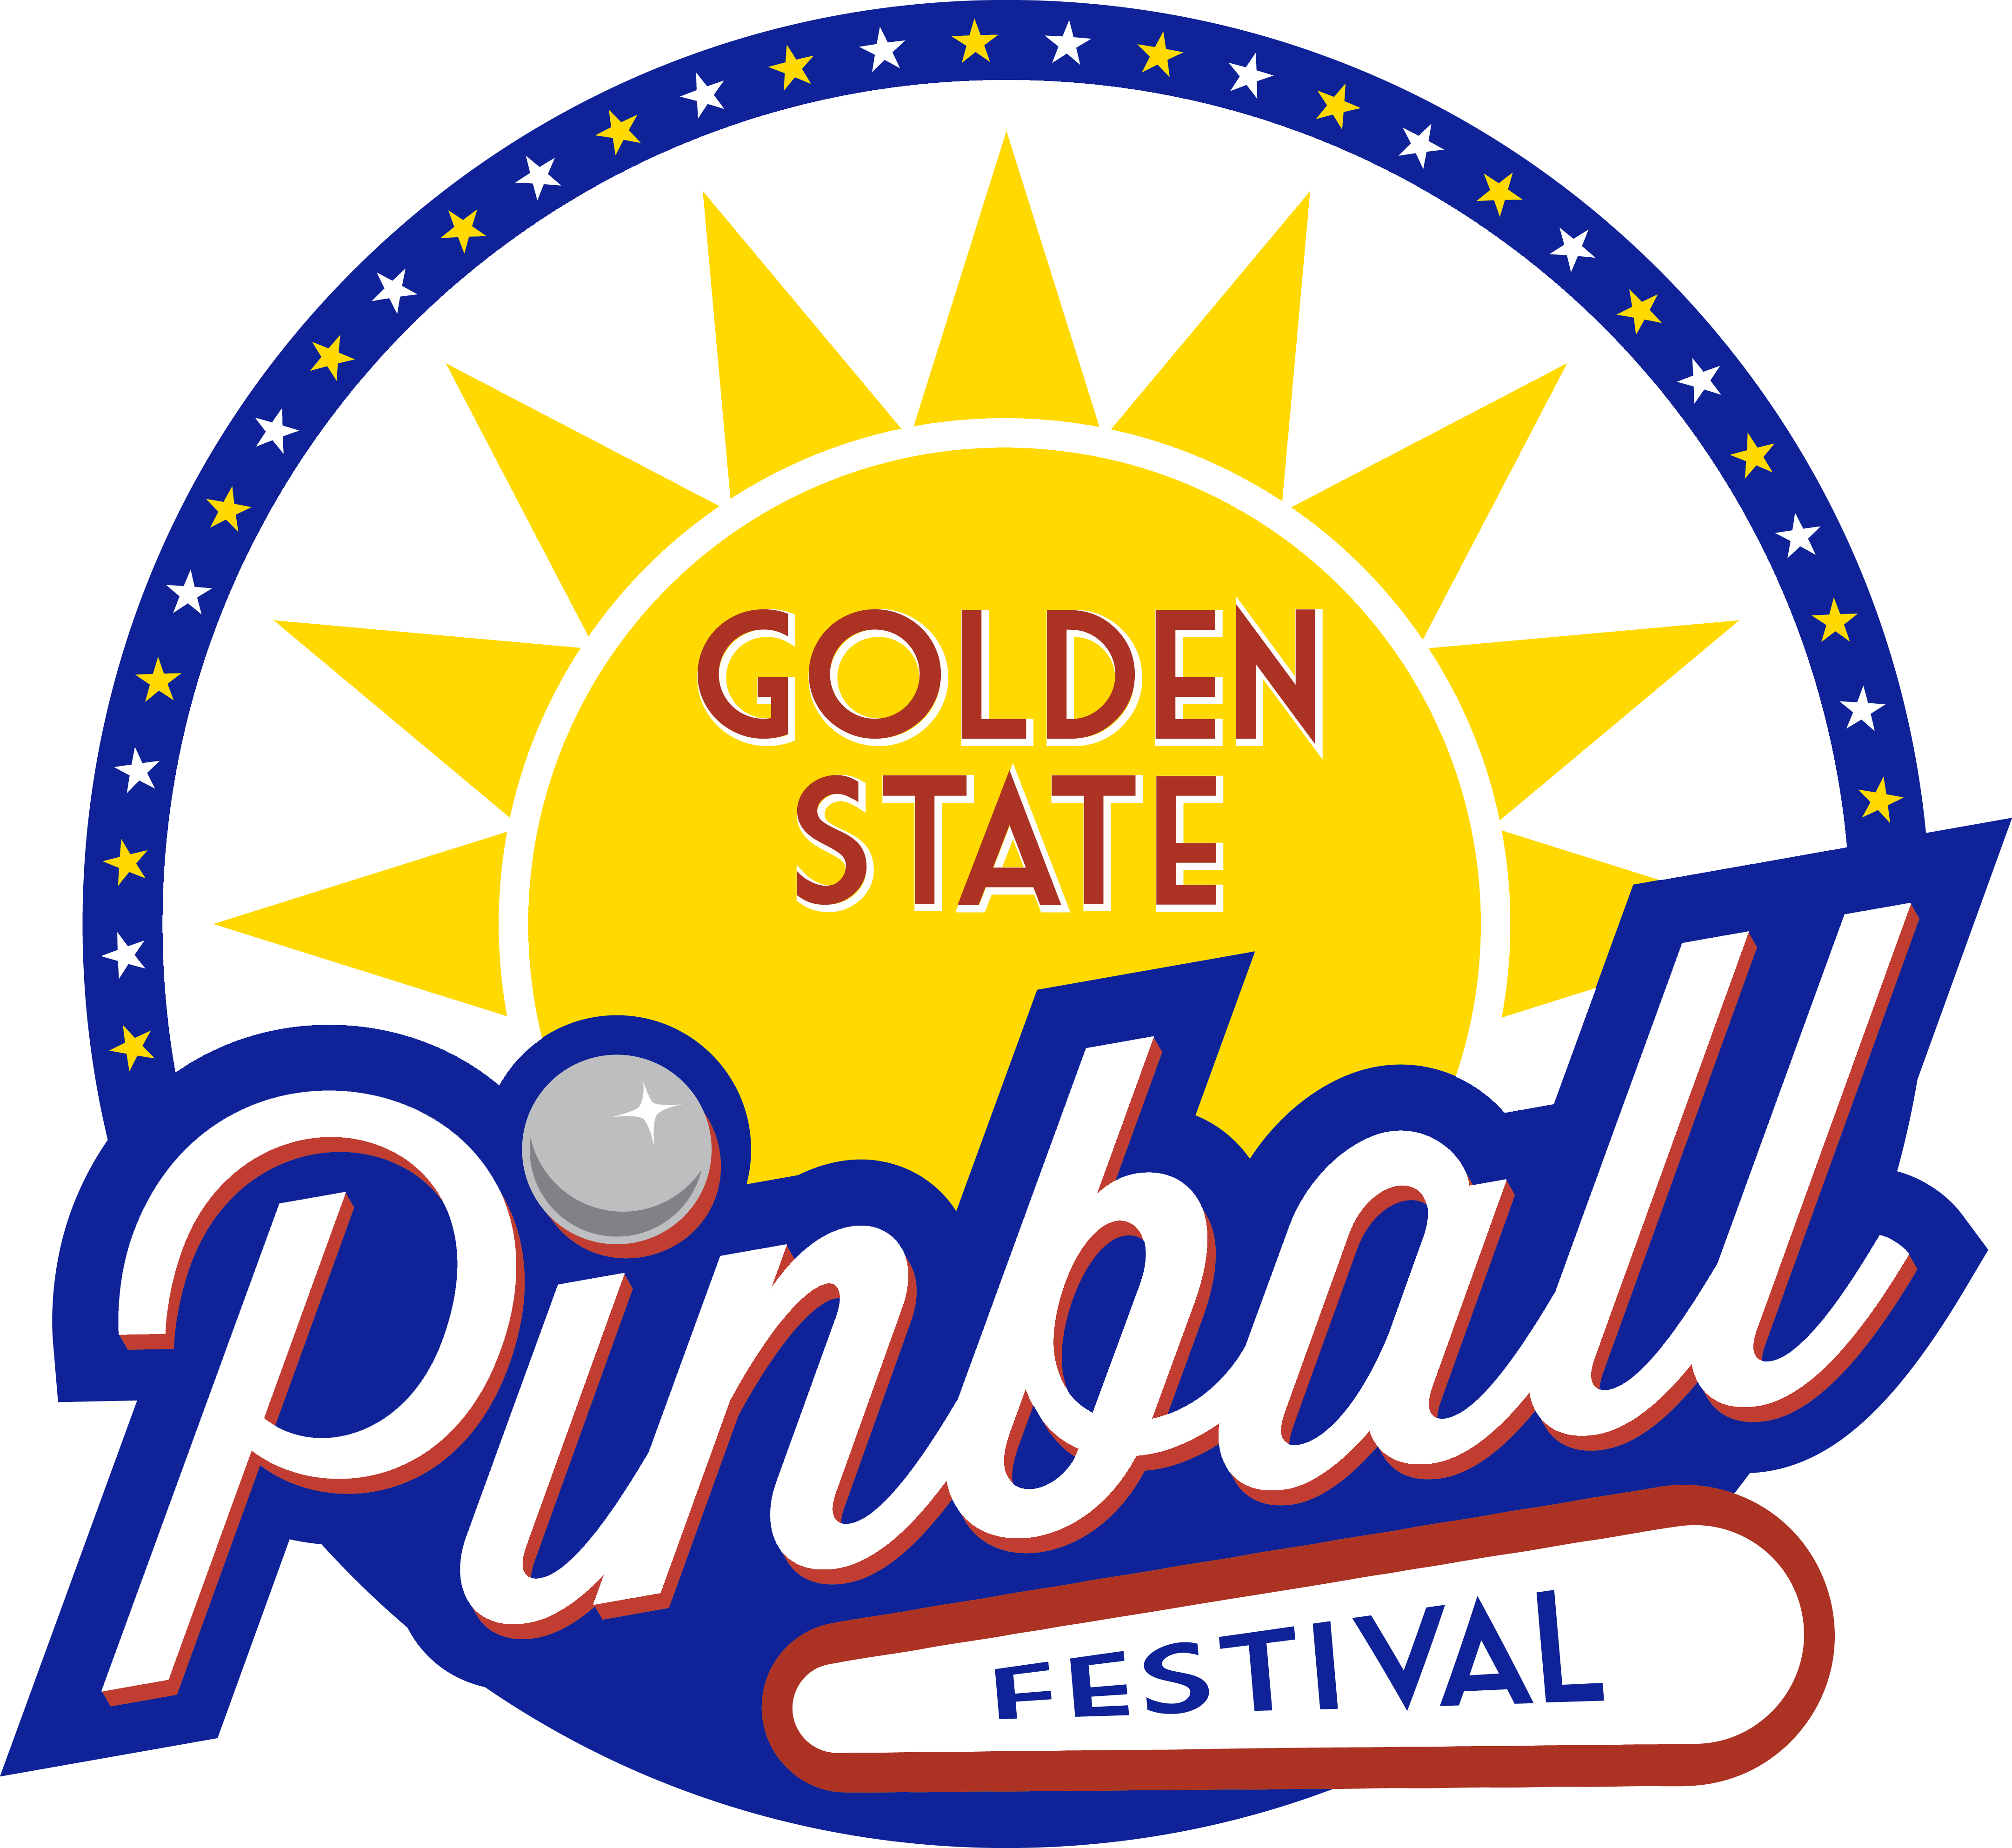 Golden State Pinball Festival